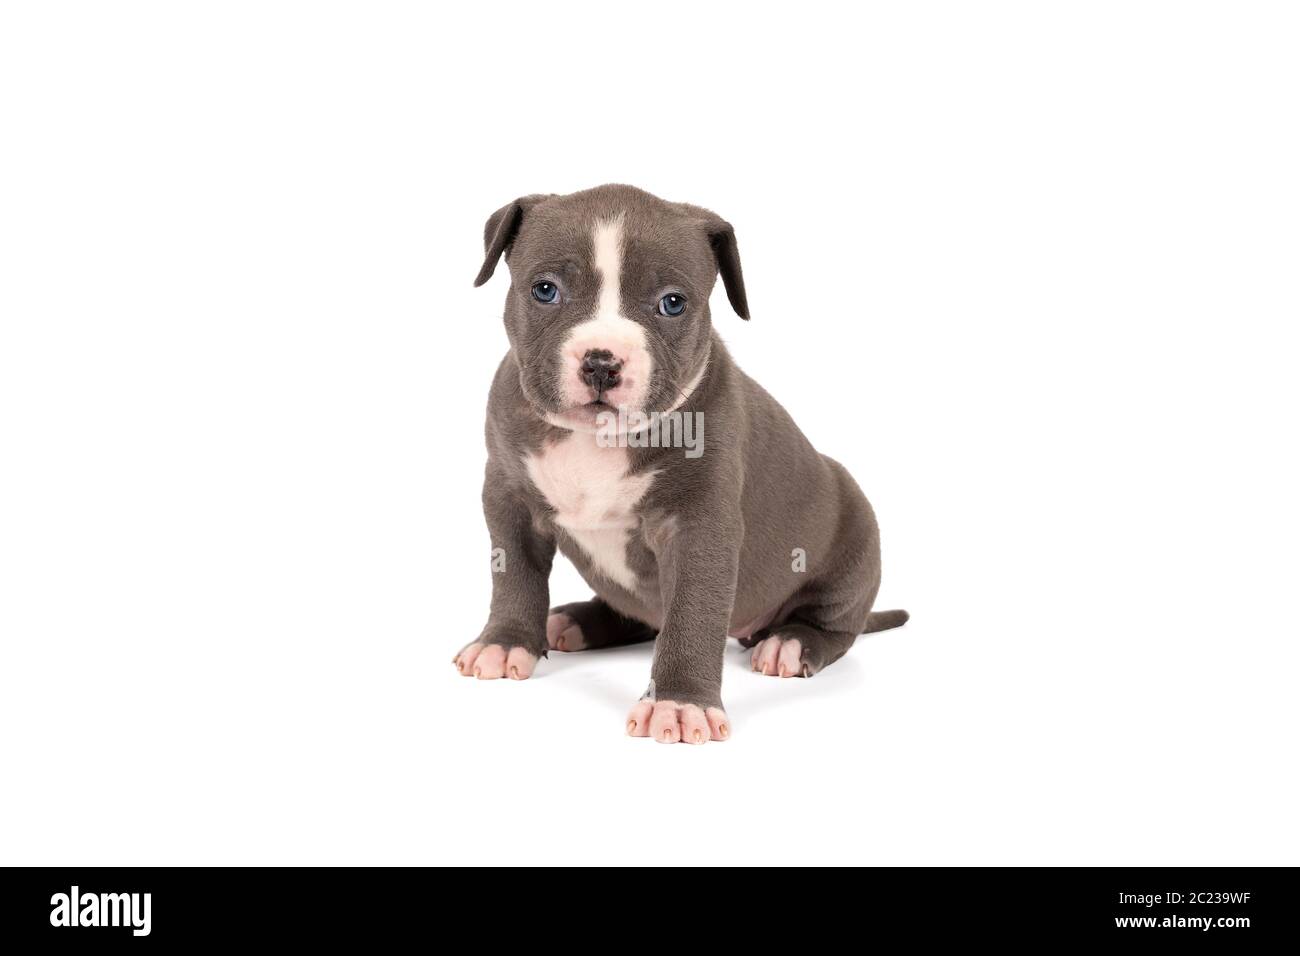 Un petit Bully américain ou Bulldog à fourrure bleue et blanche, qui regarde la caméra isolée sur un fond blanc Banque D'Images